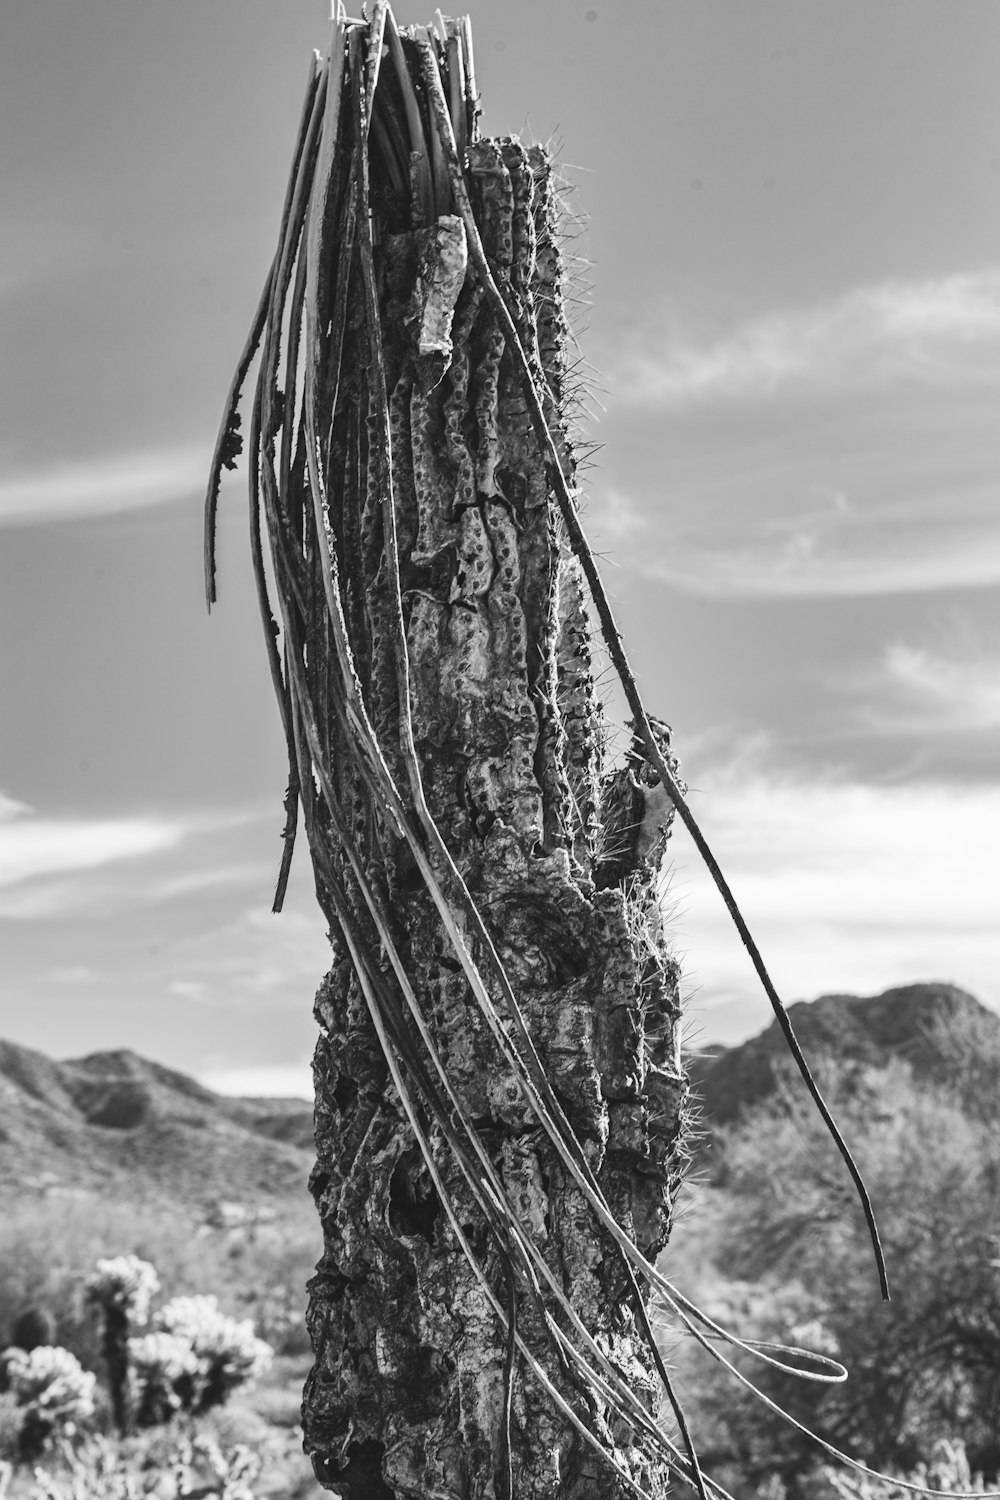 un grand cactus avec beaucoup de vignes qui poussent dessus